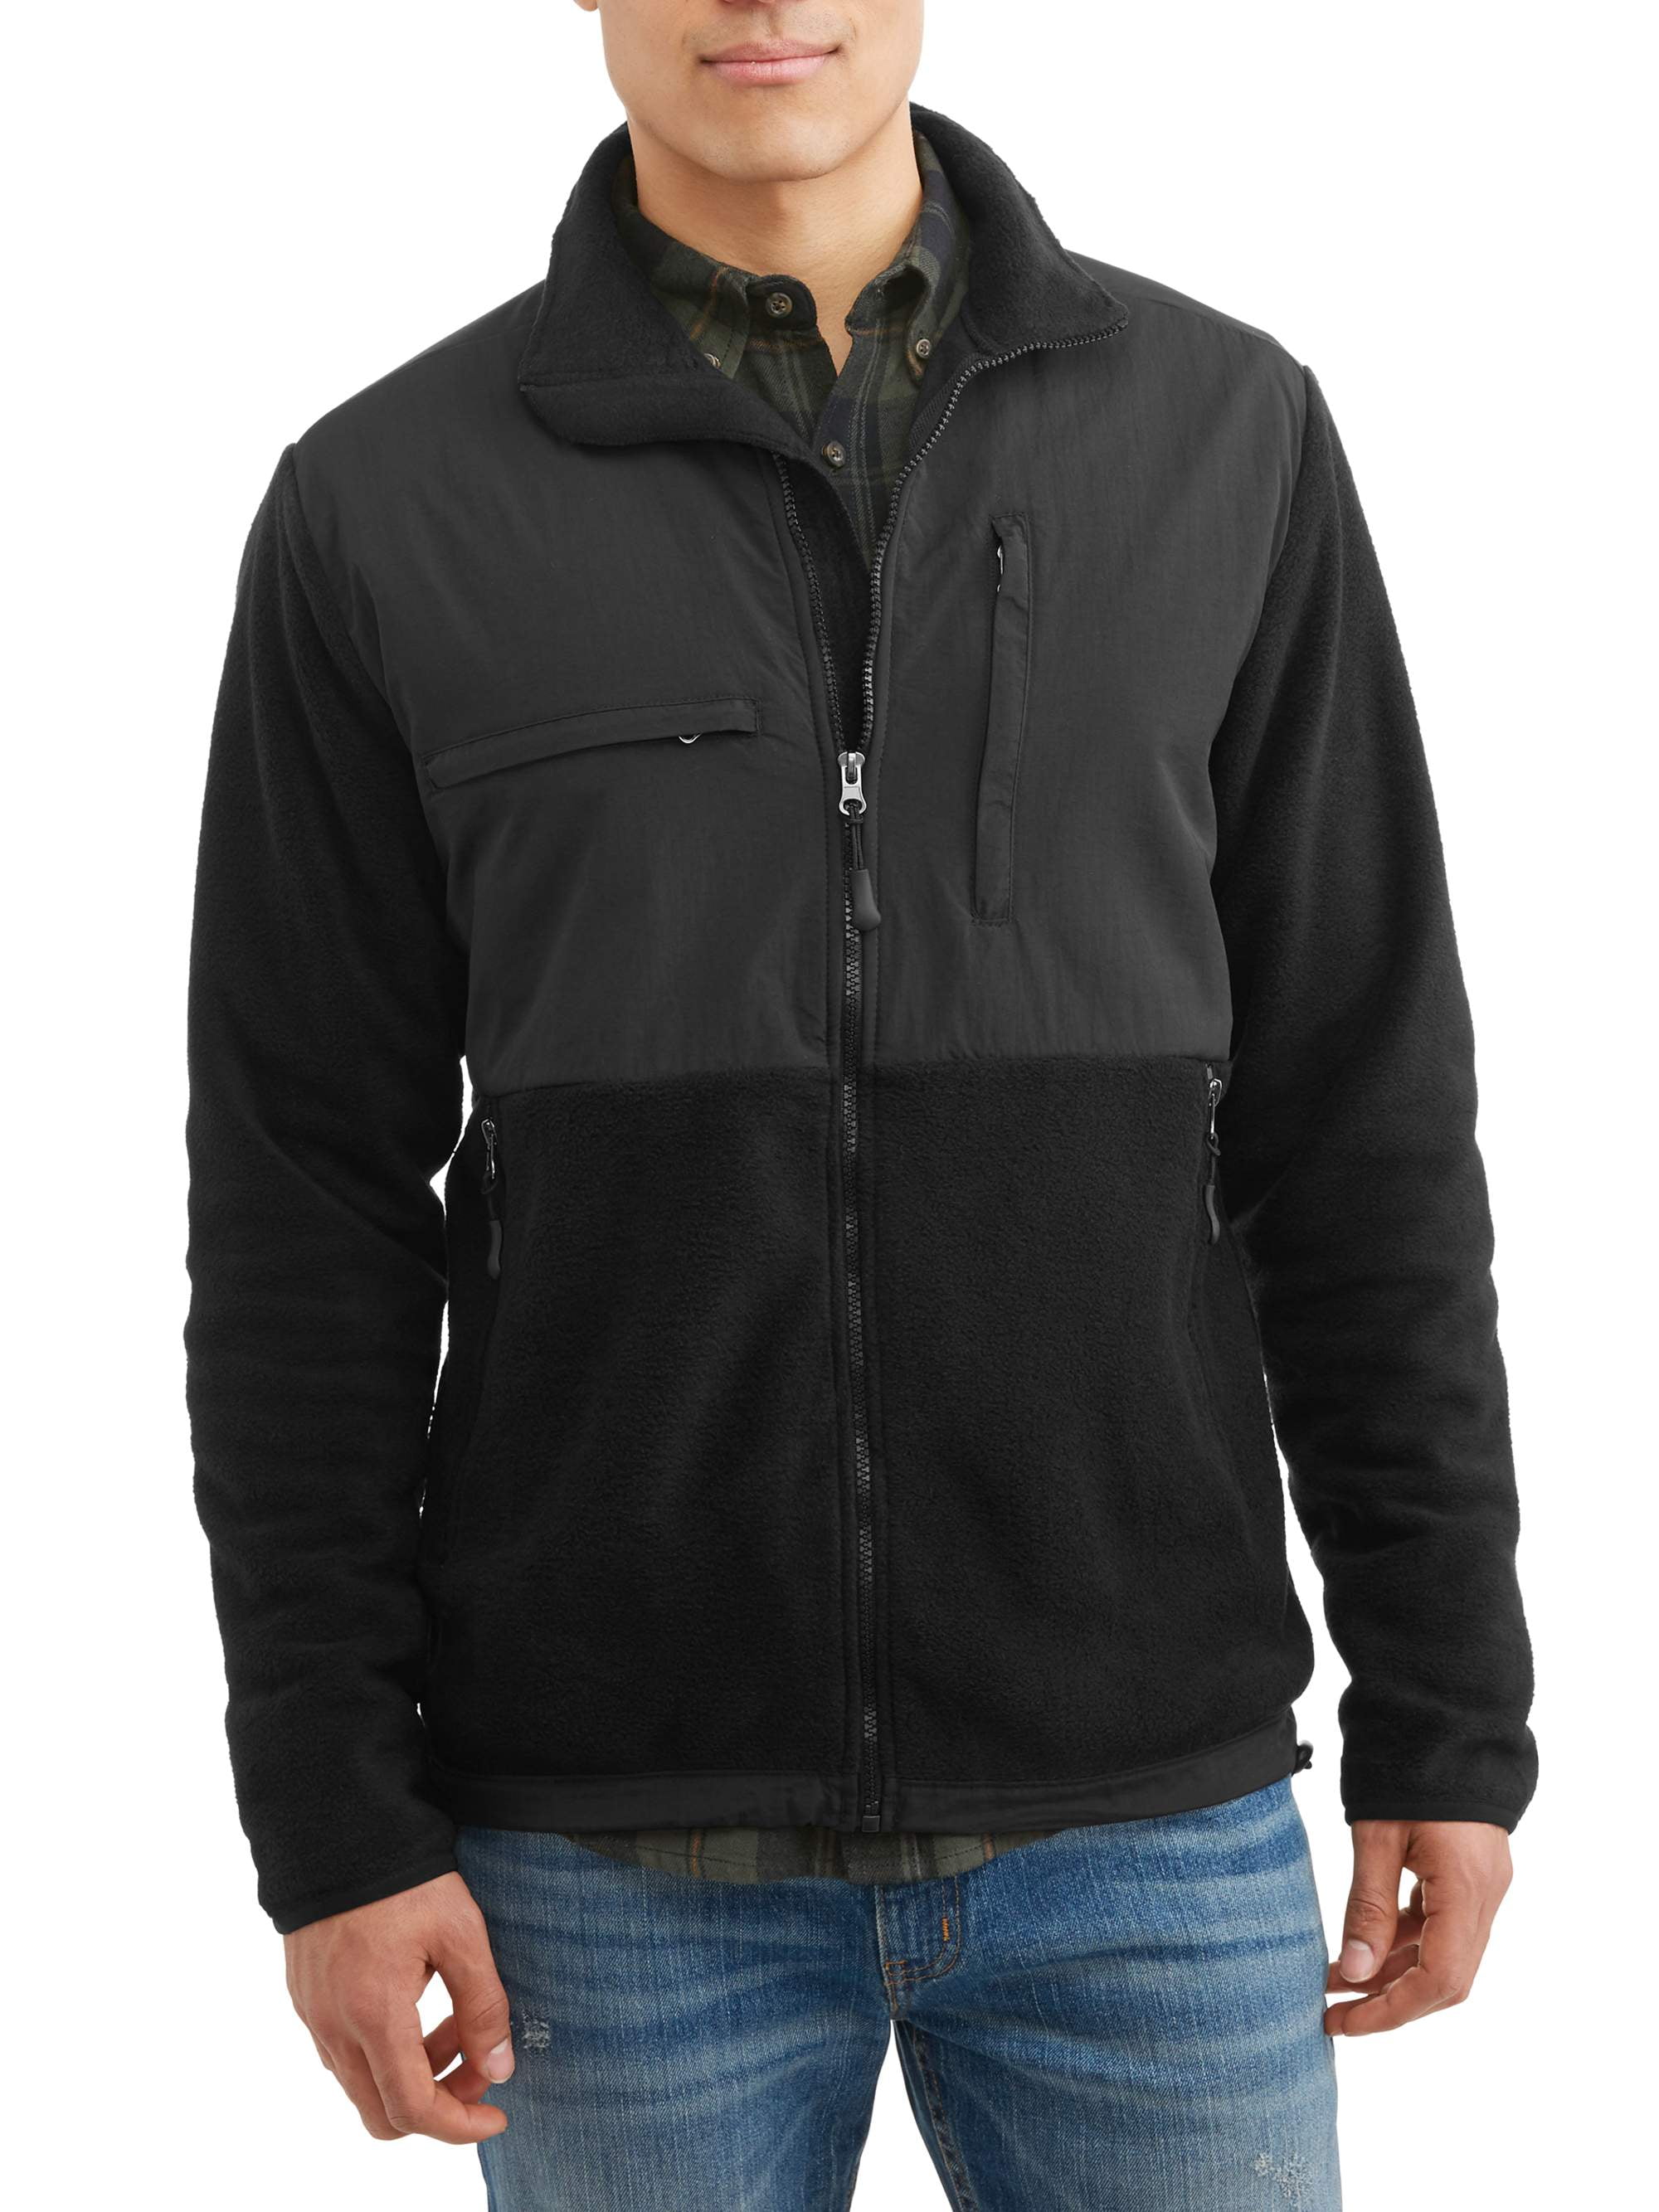 Burnside Polar Fleece Zip Front Jacket, up to Size 2XL - Walmart.com